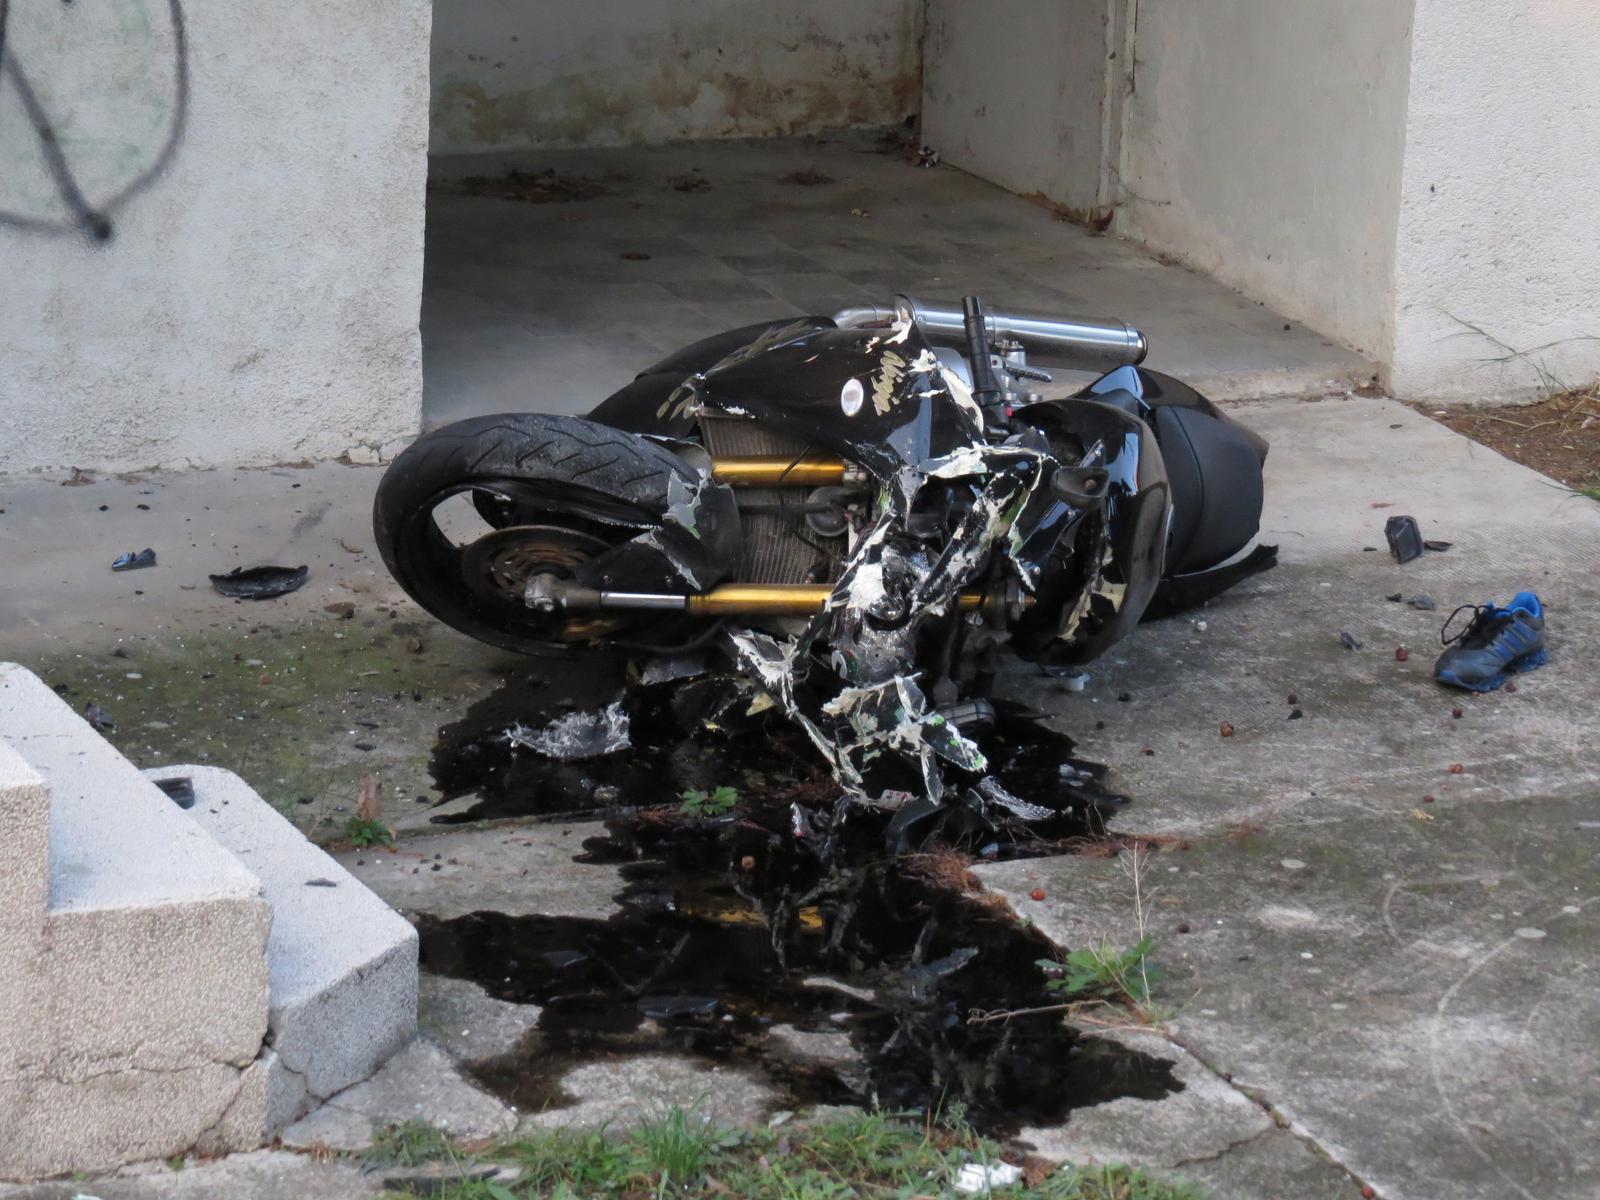 24.11.2013., Omis - Dvije osobe tesko su ozlijedjene nakon sto su na magistrali u Ducama motociklom Kawasaki udarili u zastitnu ogradu i zavrsili u dvoristu pored ceste. Nezgoda se dogodila oko 14 i 30. Policijski ocevid je u tijeku."nPhoto: Ivo Cagalj/PIXSELL"n